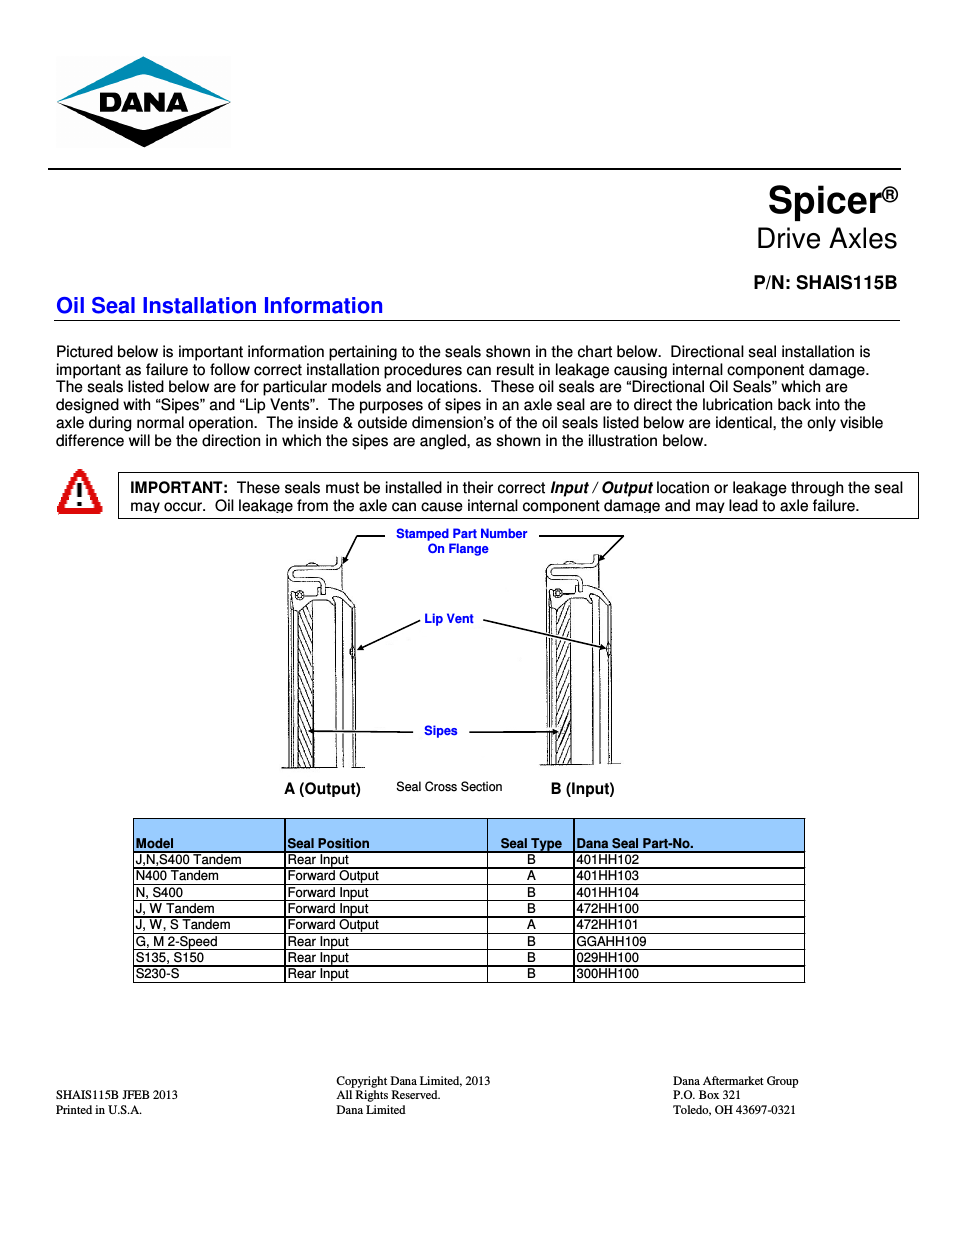 Oil Seal Installation Information